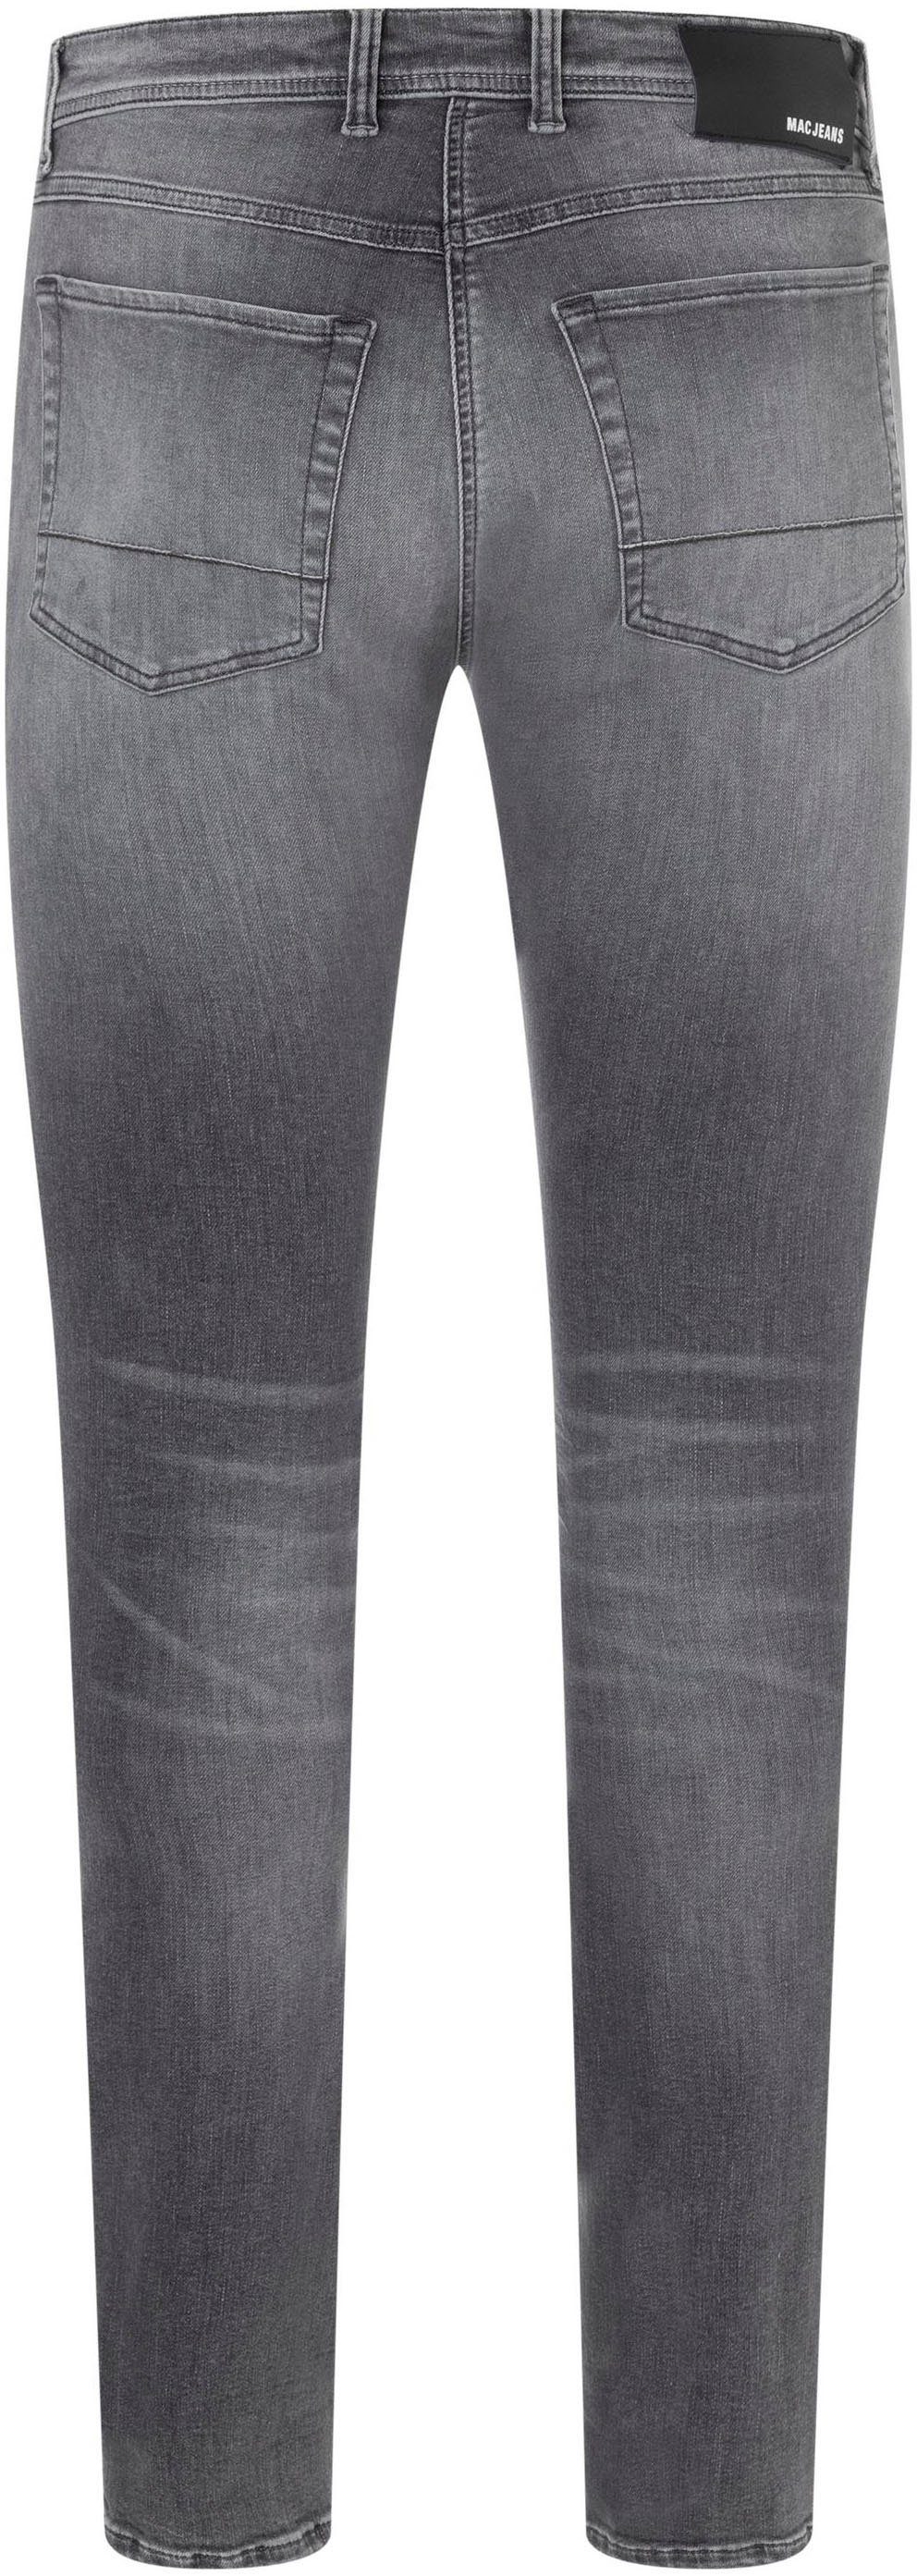 dark Straight-Jeans washed Flexx-Driver black elastisch super MAC